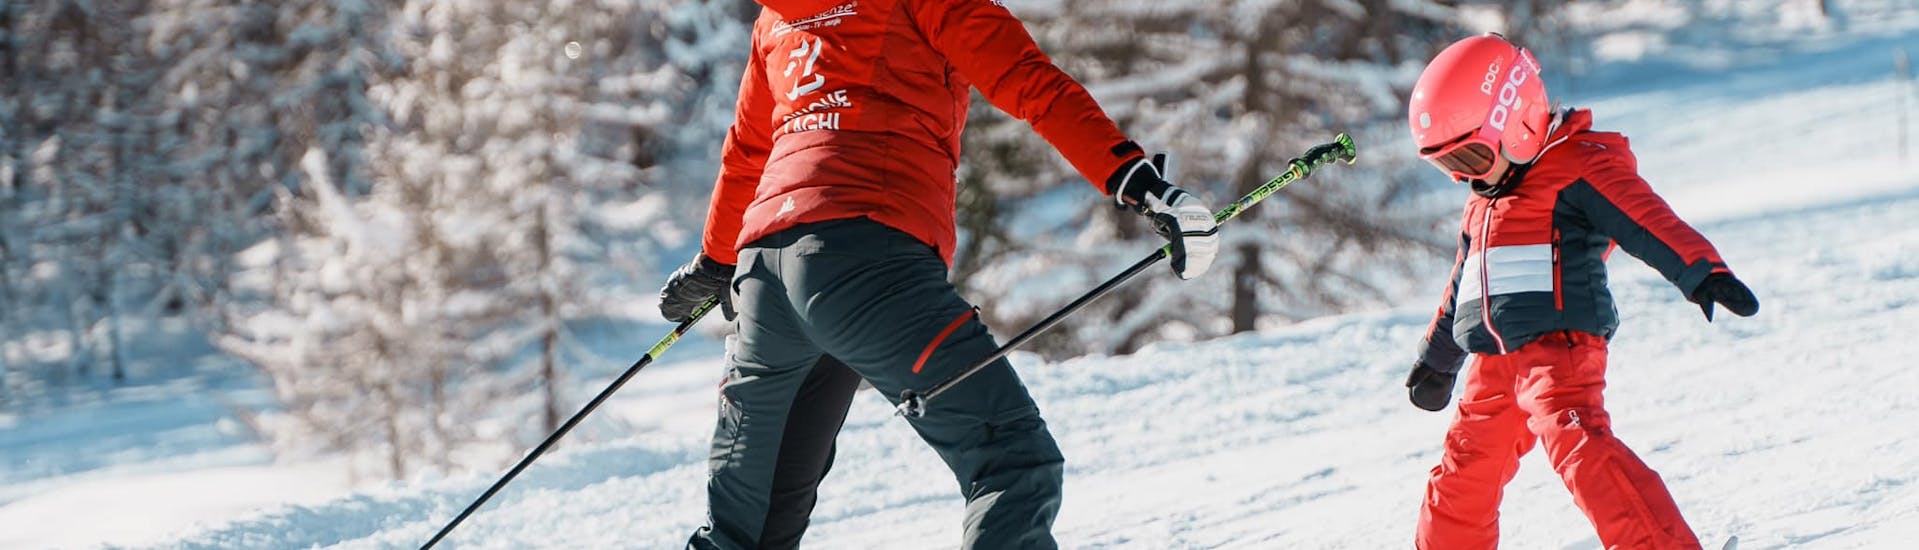 Privé skilessen voor kinderen.